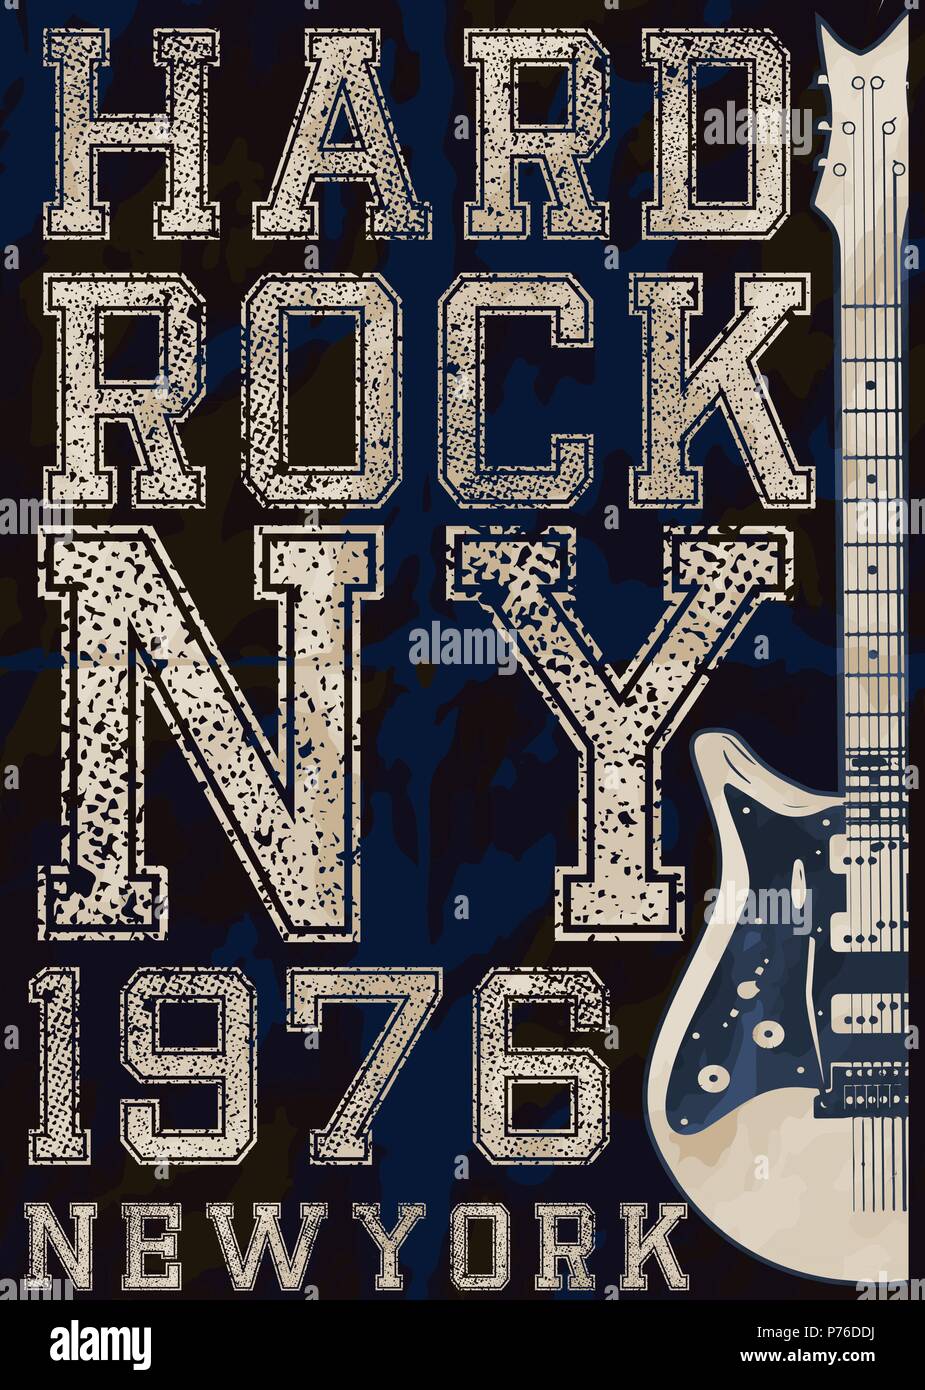 Rock Poster, Vintage Rock und Roll typografischen für t-shirt; T-Stück Design; Poster; Vector Illustration Stock Vektor